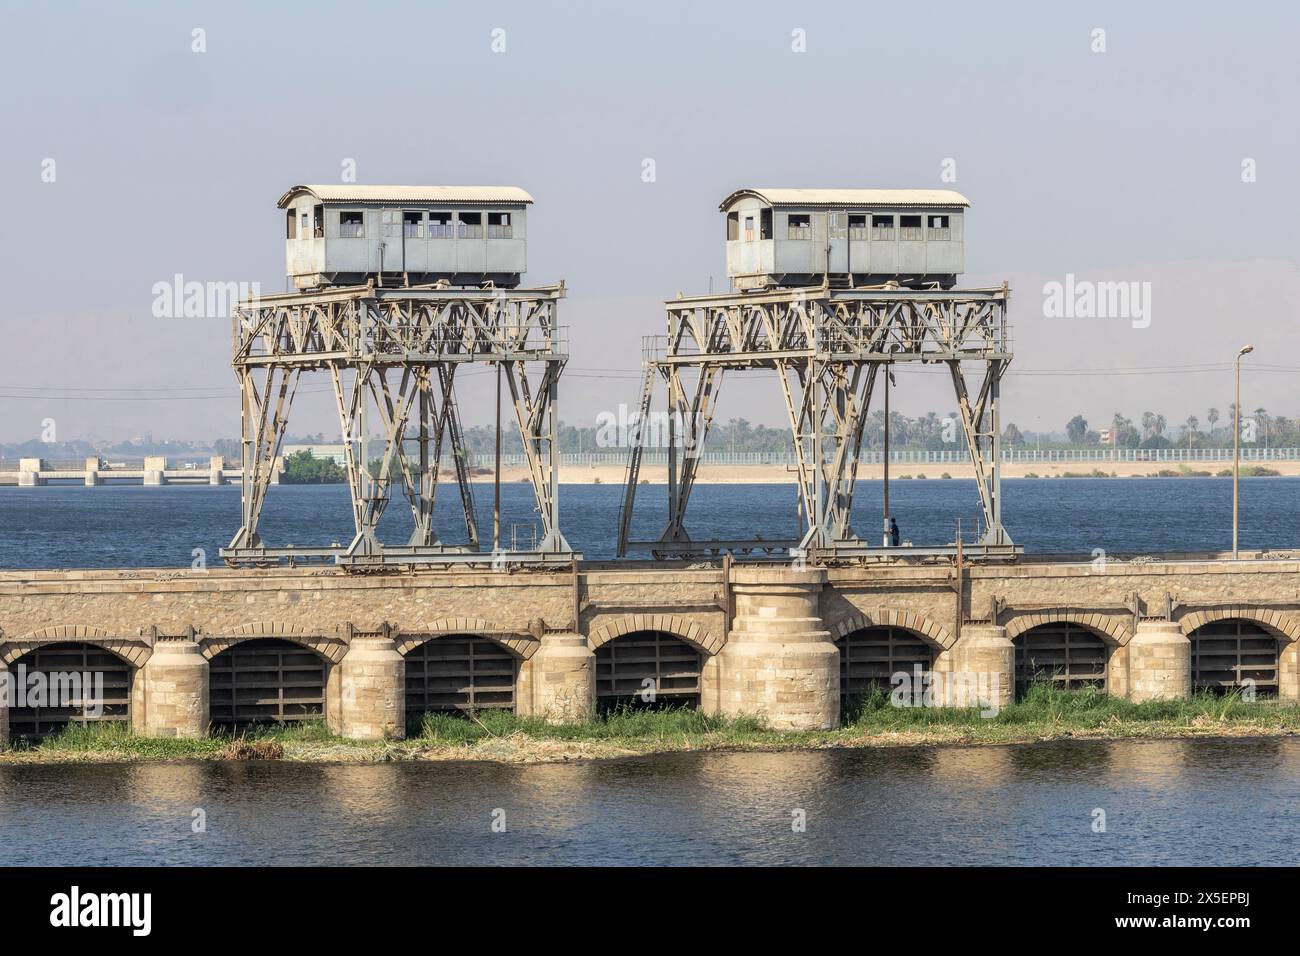 La chiusa e la diga di Esna fu costruita nel 1908 durante il regno del Chedivè Abbas Hilmi II. Successivamente fu rinnovata e aggiornata, riaperta nel 1996. Egitto. Foto Stock